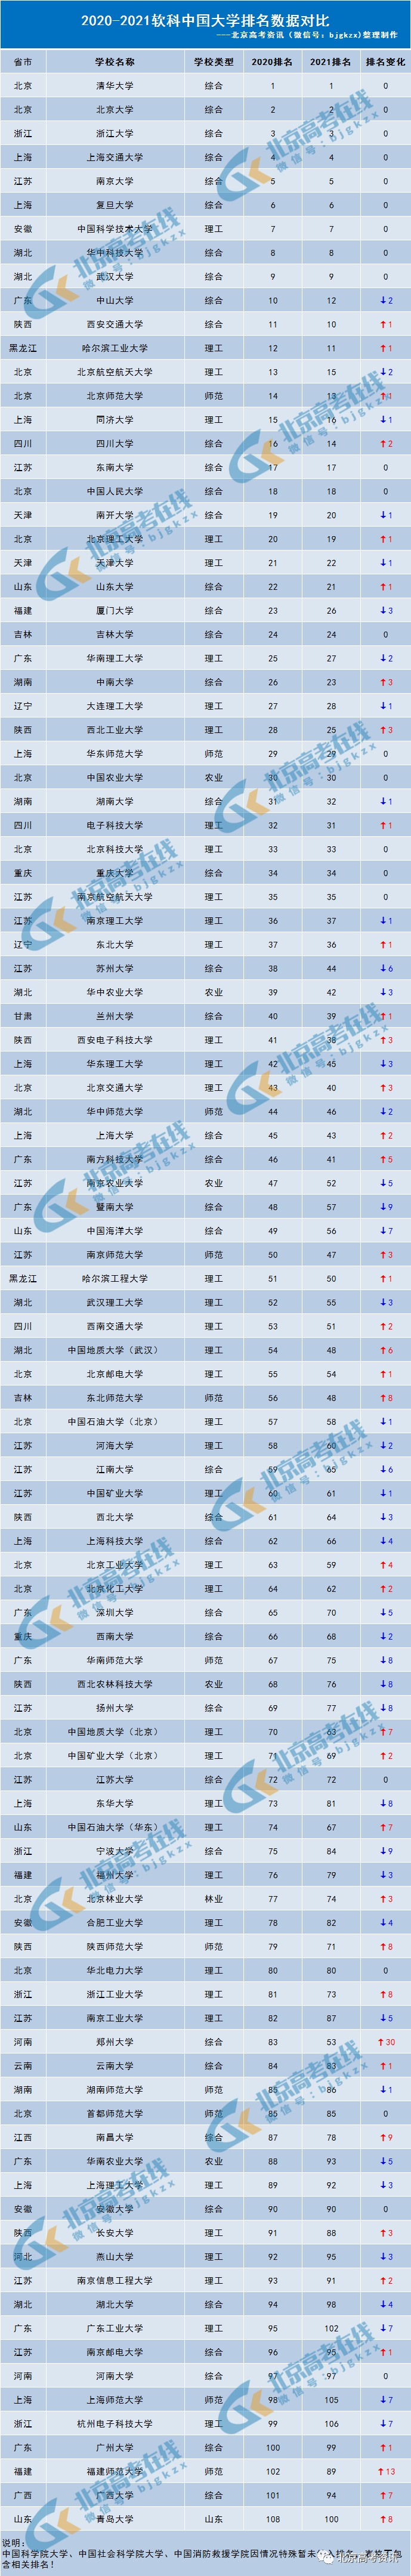 qs排名中国大学图片